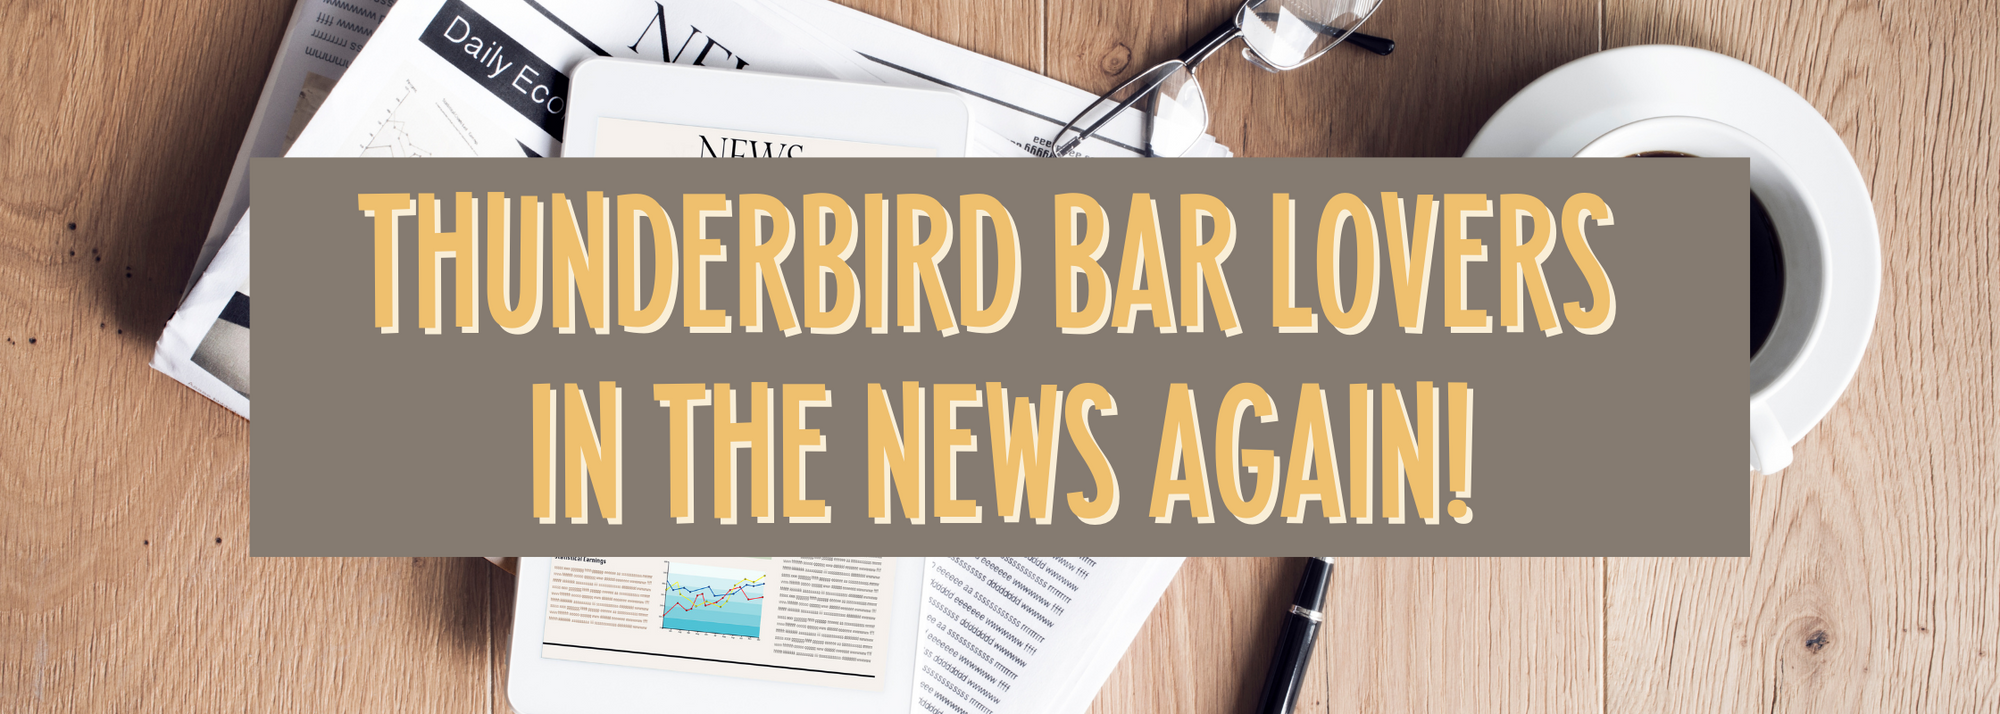 Thunderbird Bar Lovers in the News Again!